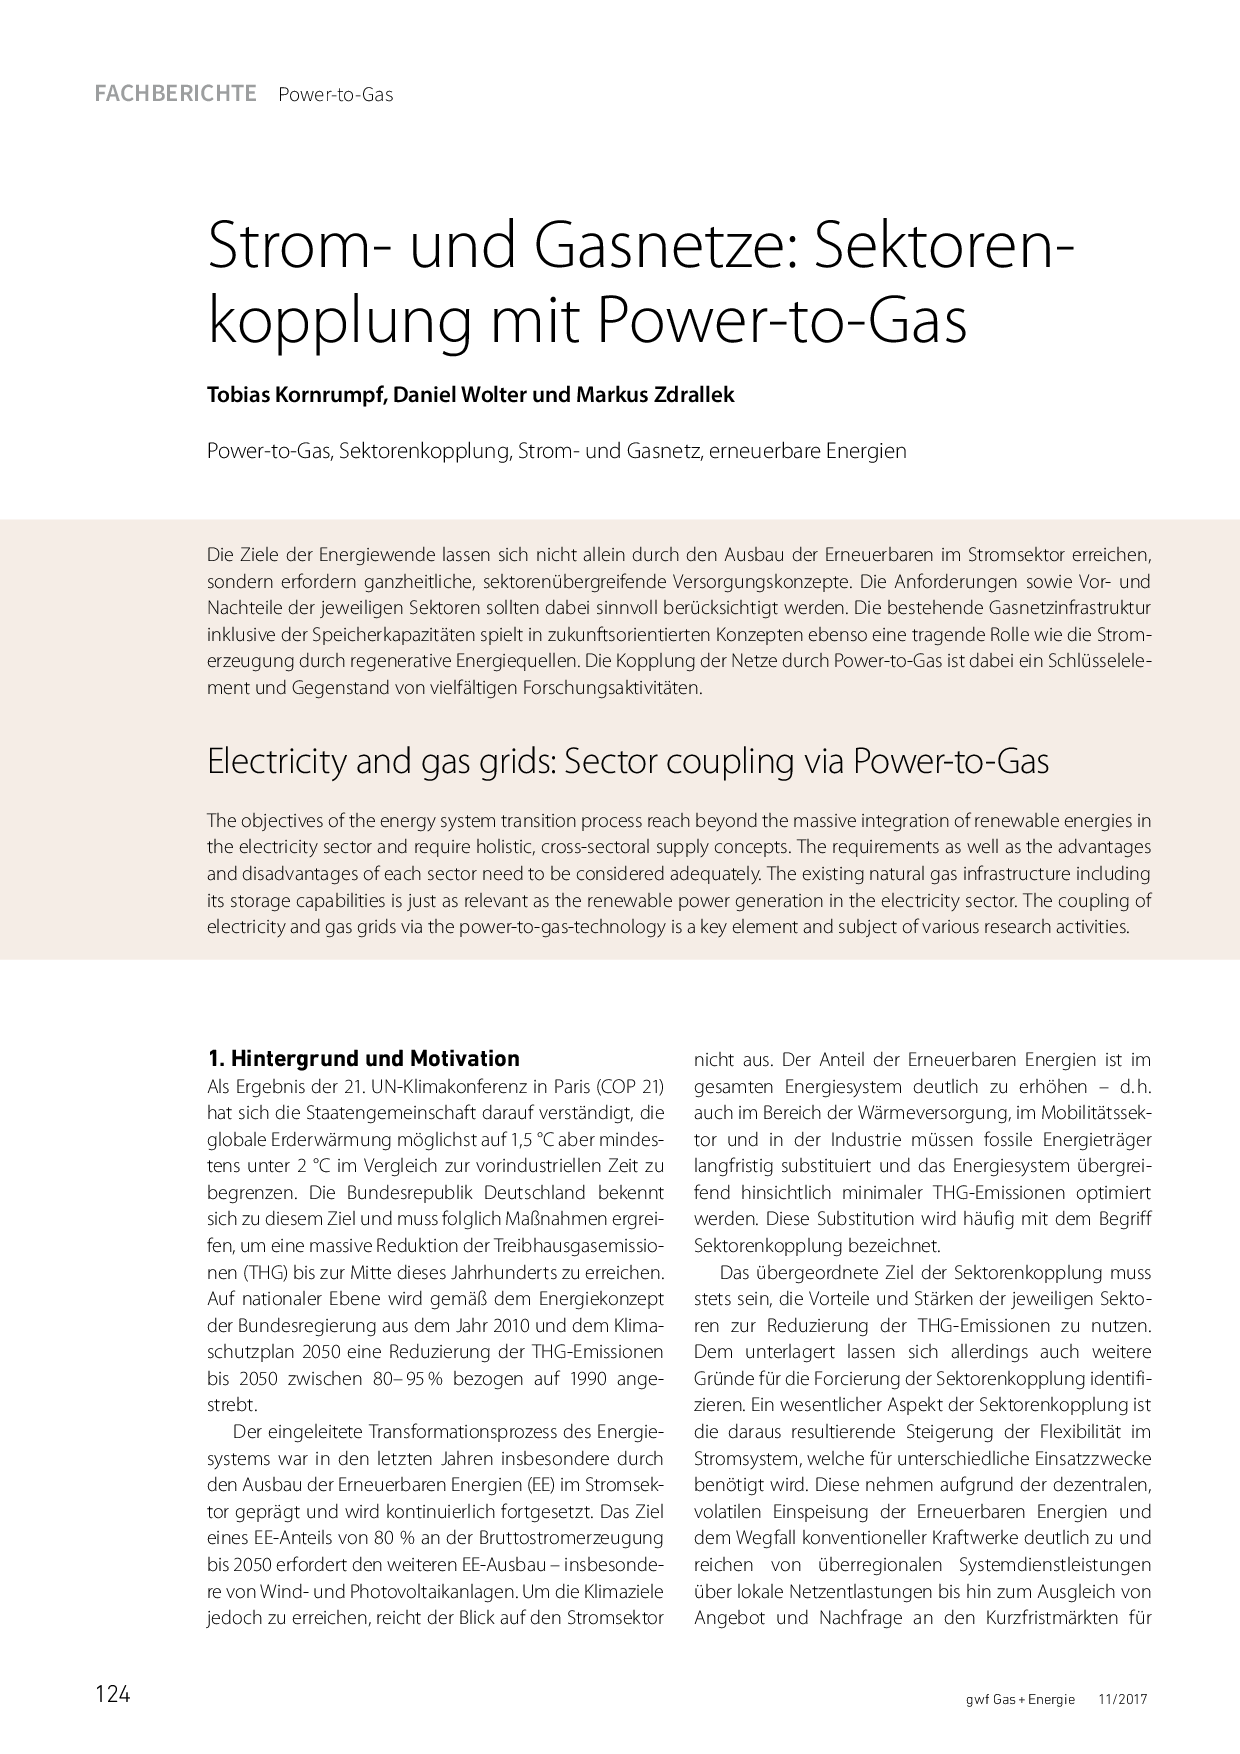 Strom- und Gasnetze: Sektorenkopplung mit Power-to-Gas